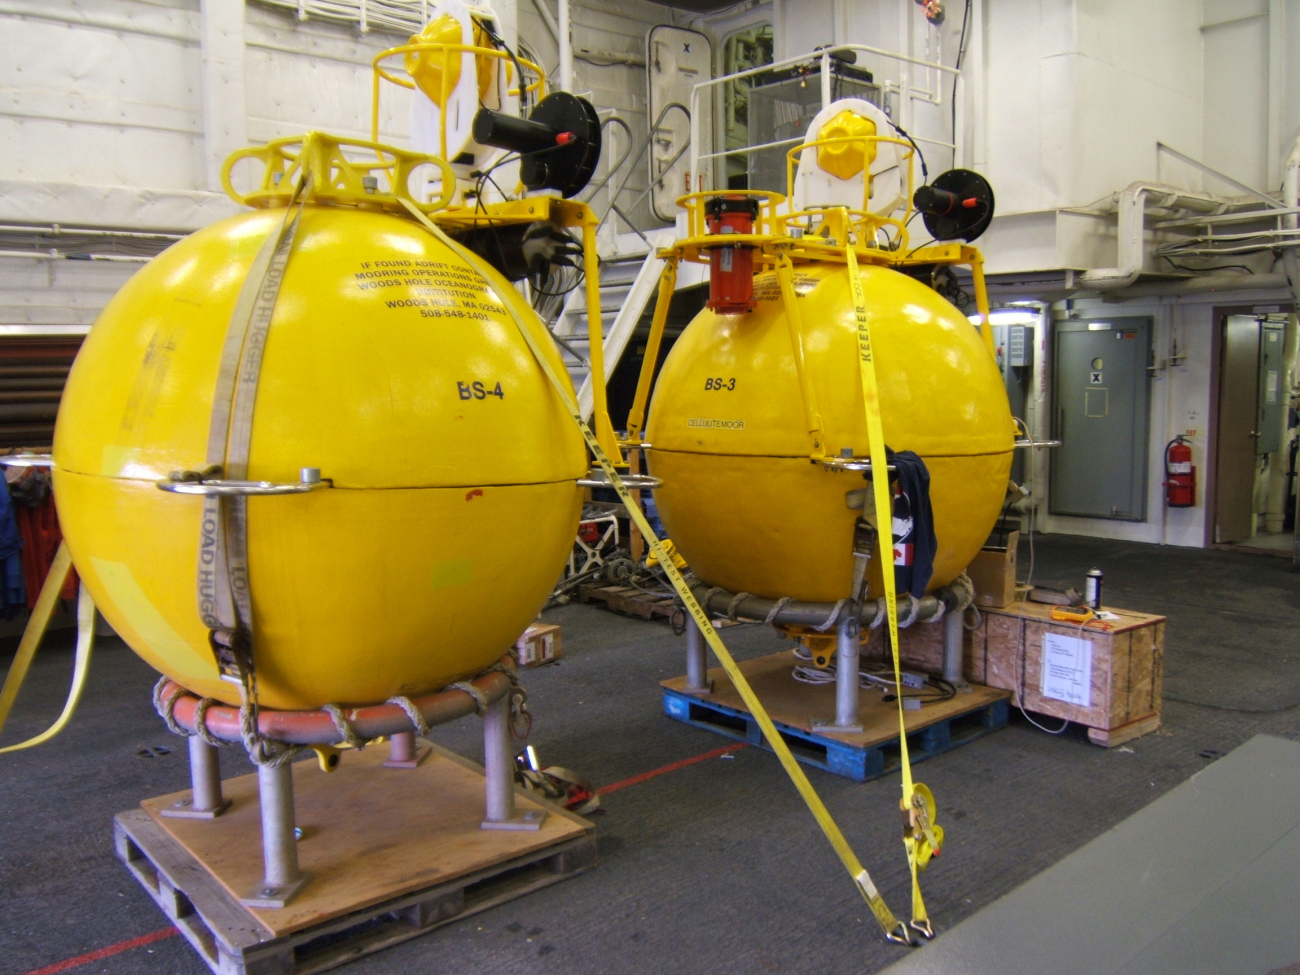 Woods Hole Oceanographic Institution oceanographic buoys